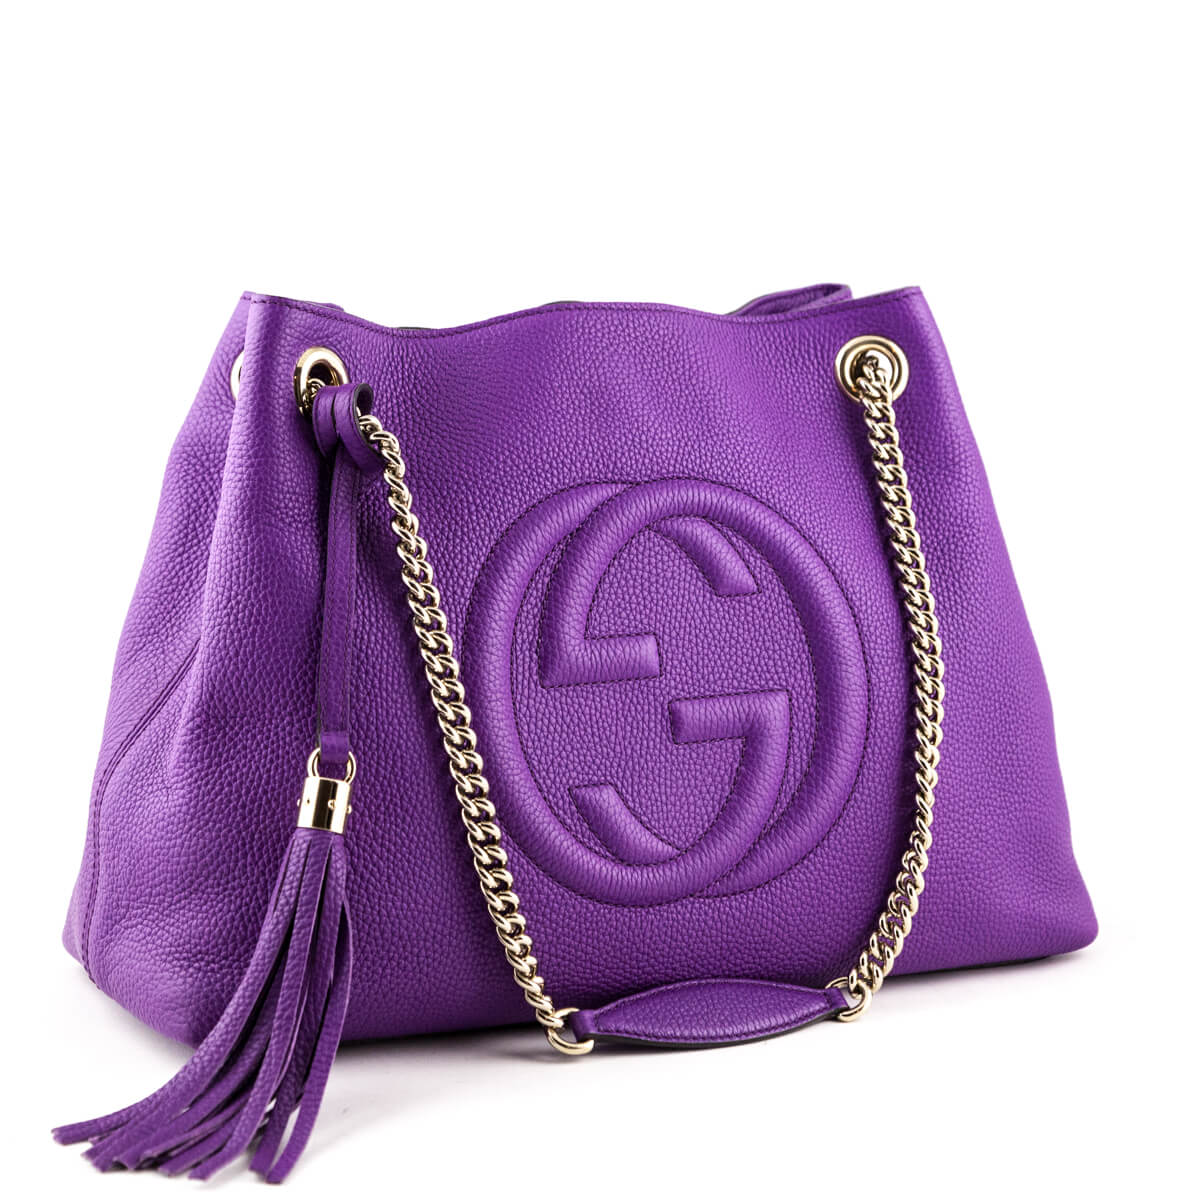 Gucci Purple Soho Chain Shoulder Bag - Gucci Shoulder Handbags